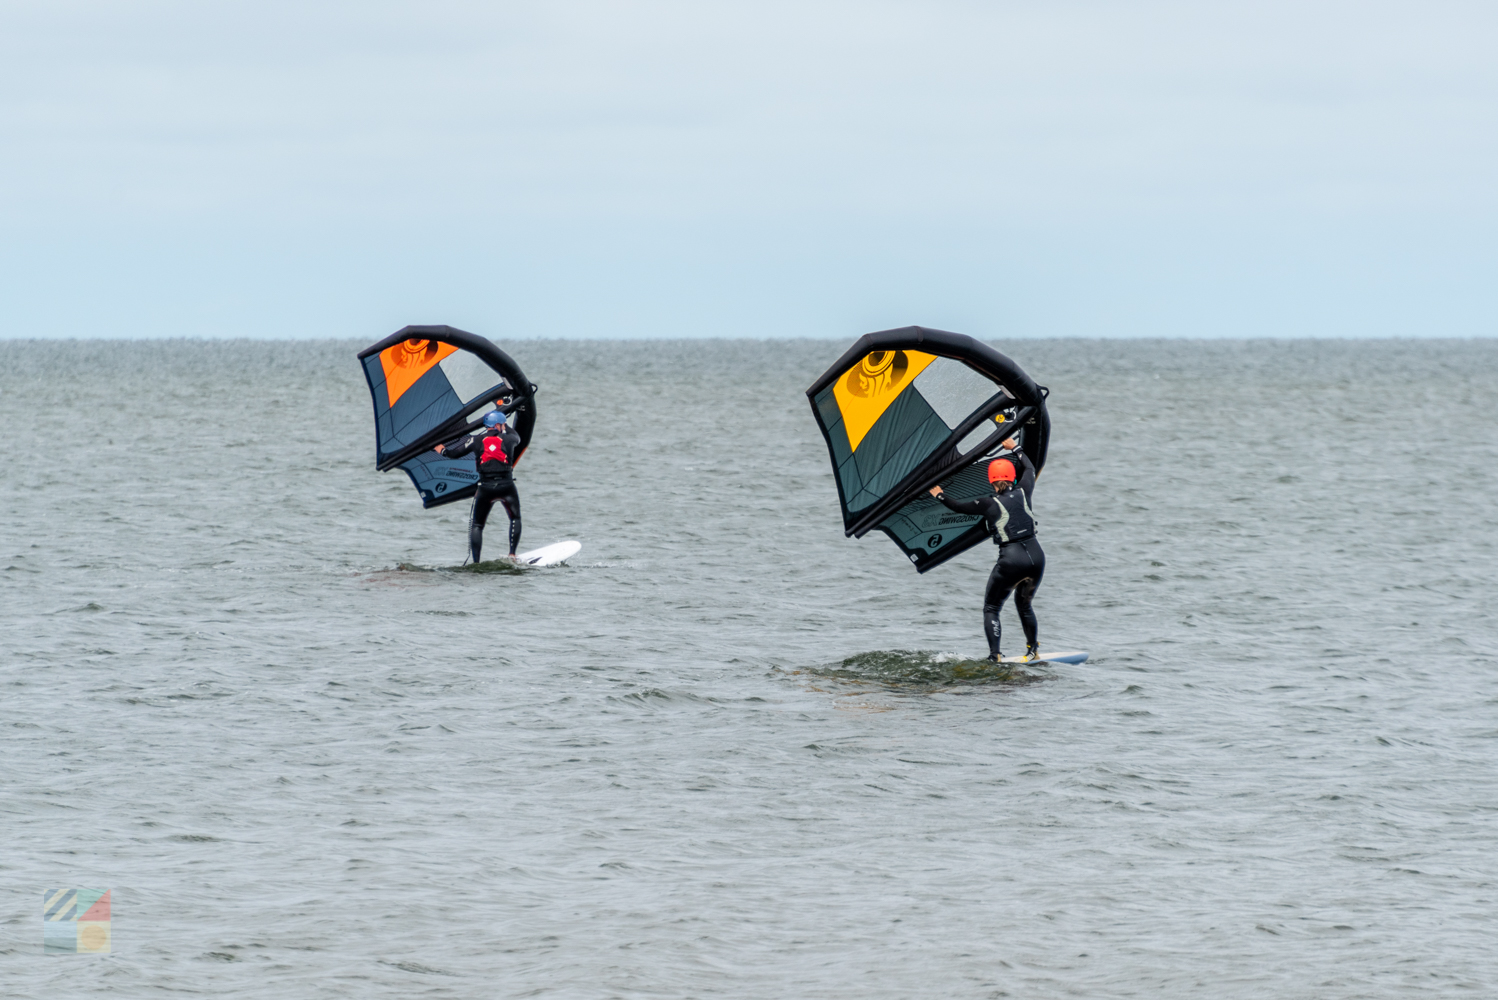 Kite boarding in Salvo